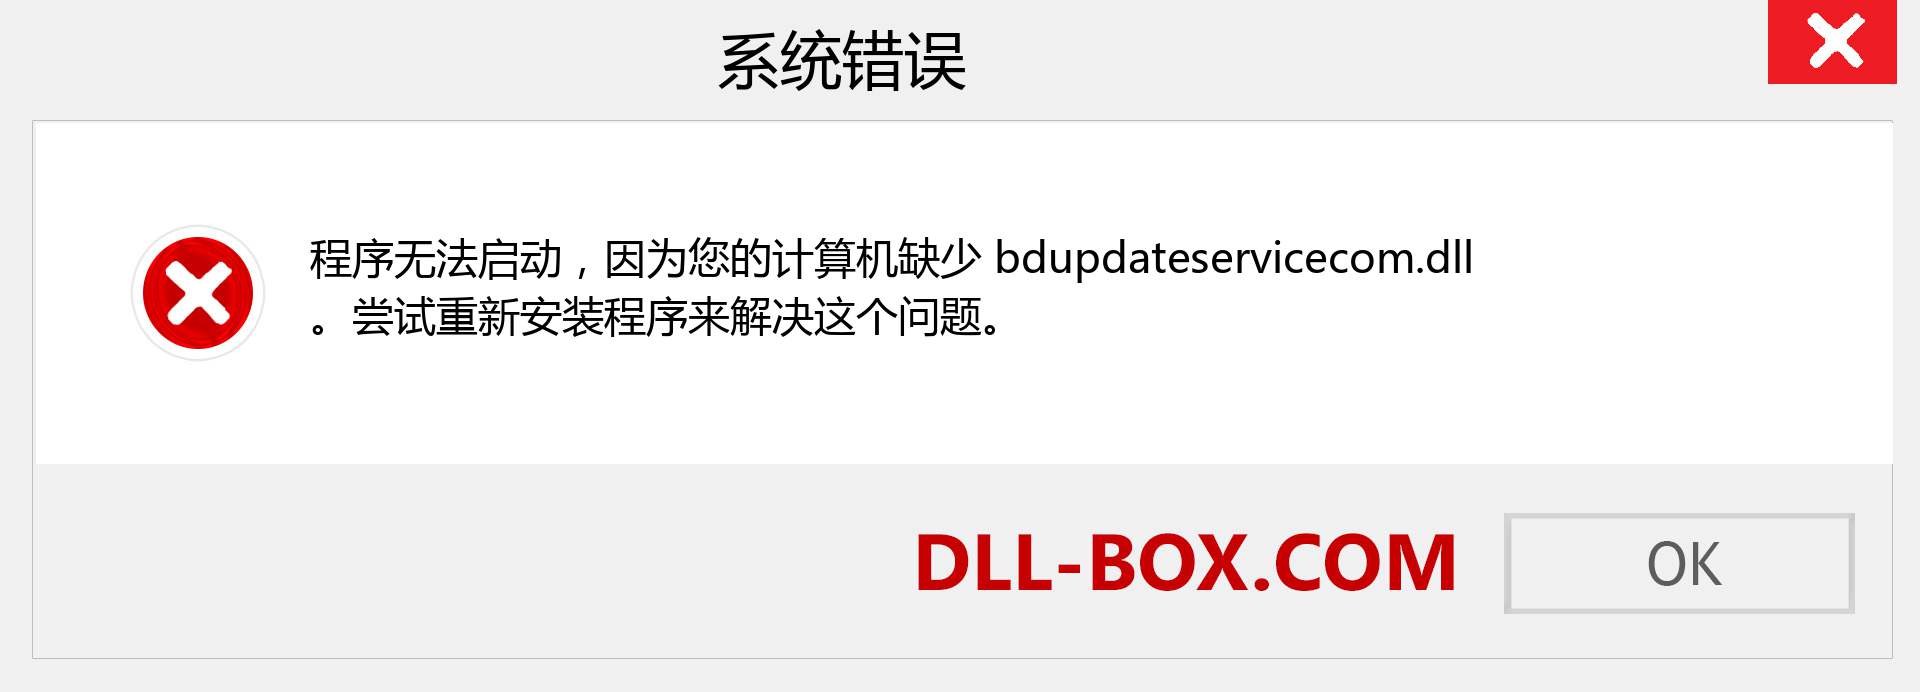 bdupdateservicecom.dll 文件丢失？。 适用于 Windows 7、8、10 的下载 - 修复 Windows、照片、图像上的 bdupdateservicecom dll 丢失错误